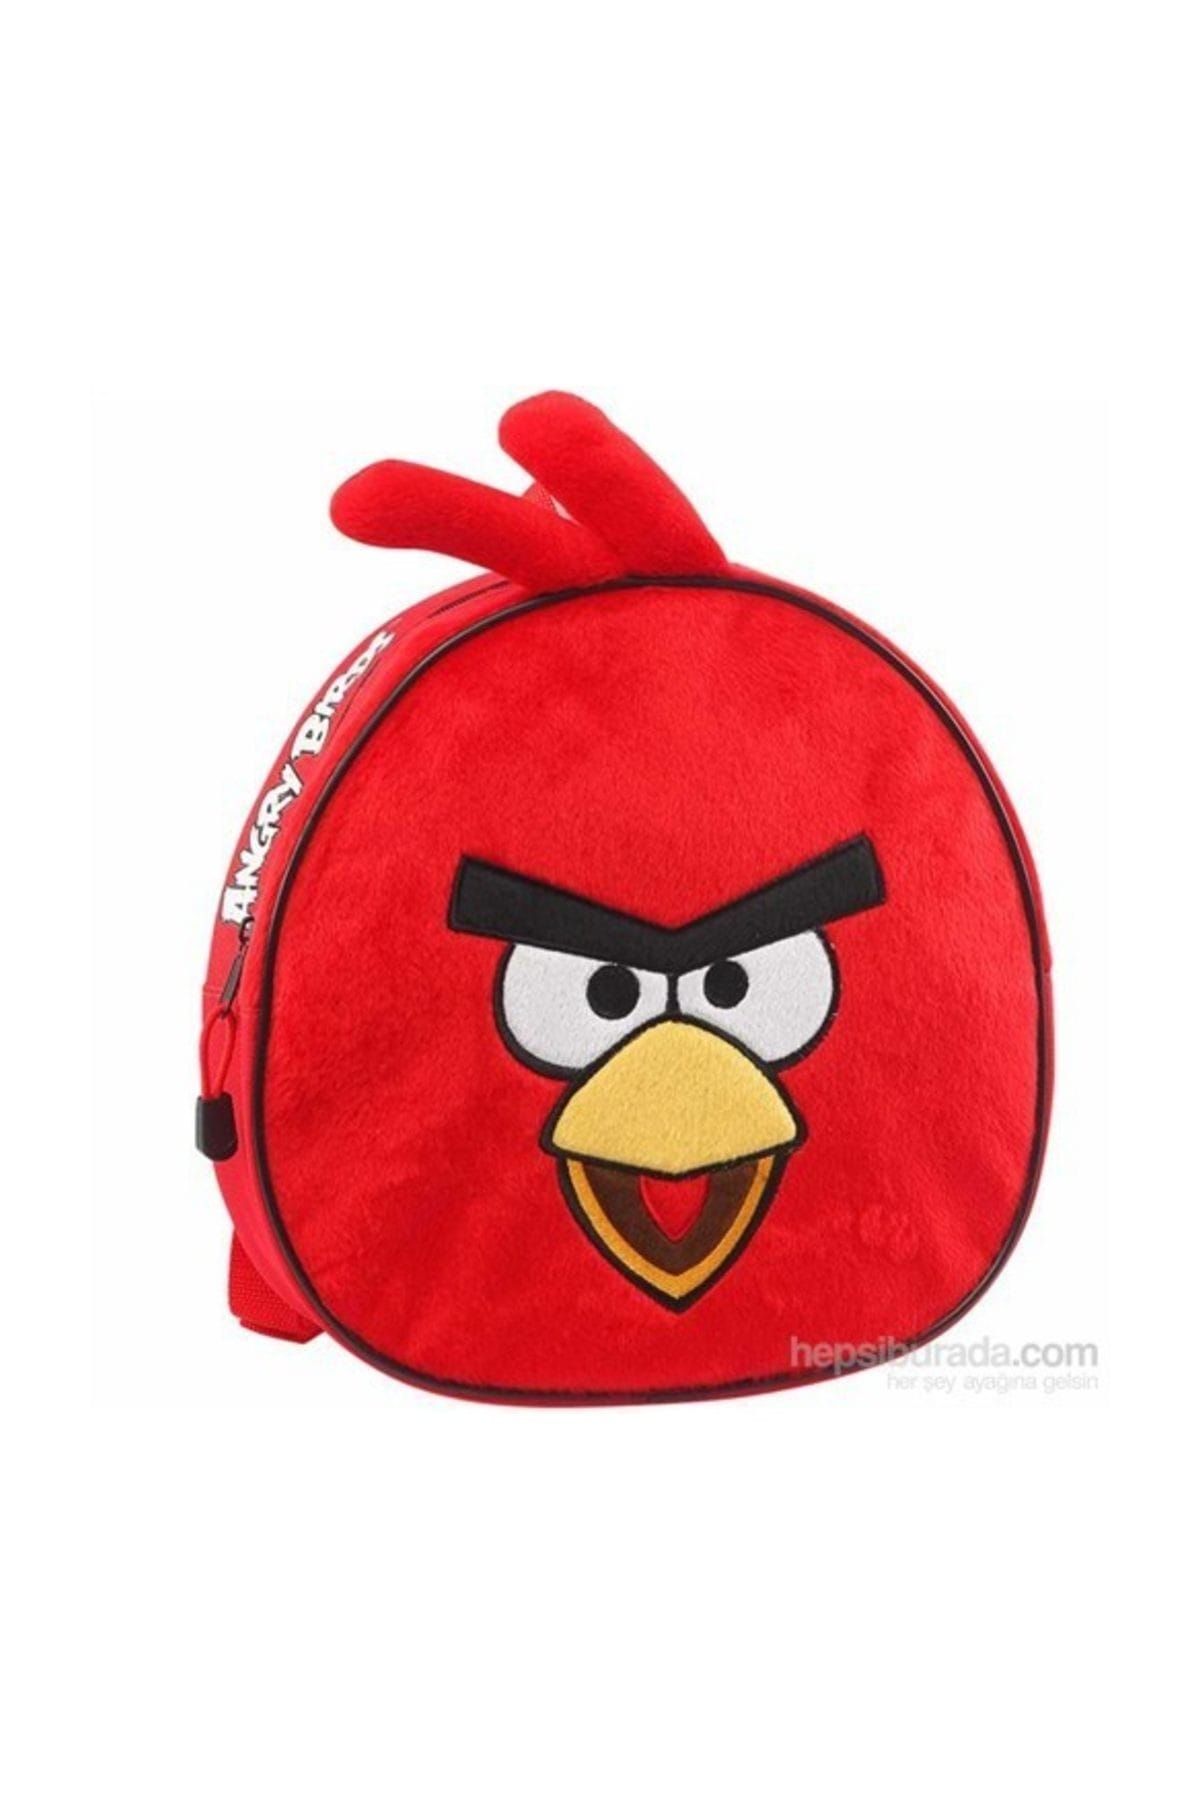 Angry Birds Angry Bırds Pelus Anaokul Çantası